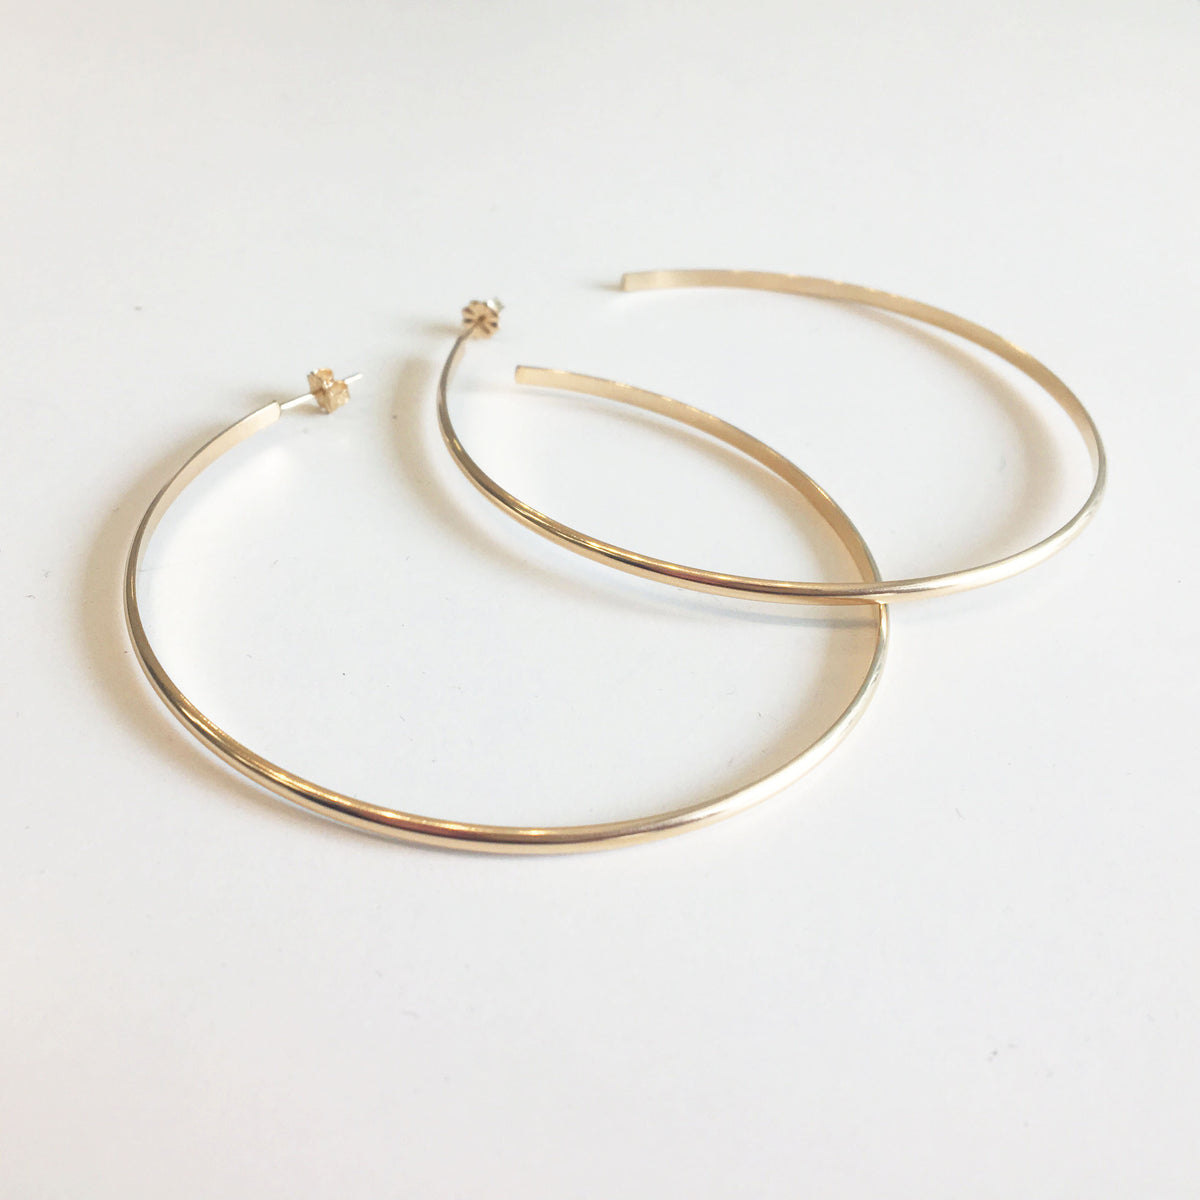 oversized hoop earrings in gold for sale on glamrocks jewelry